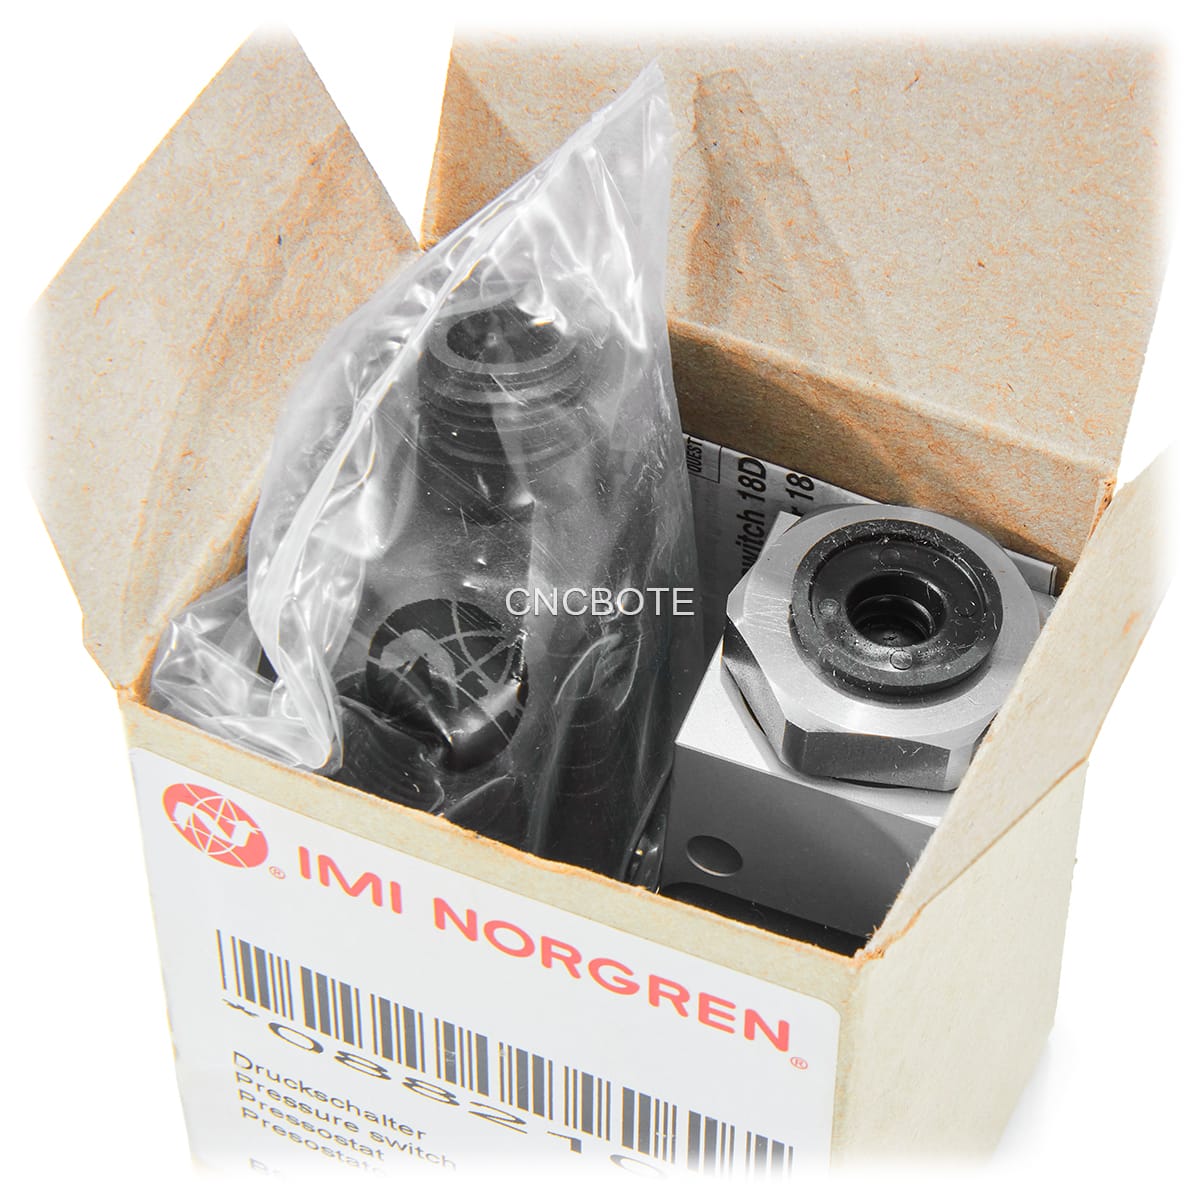 IMI Norgren 18D, G1/4 5 bar bis 70 bar Überdruck Druckschalter 0882100